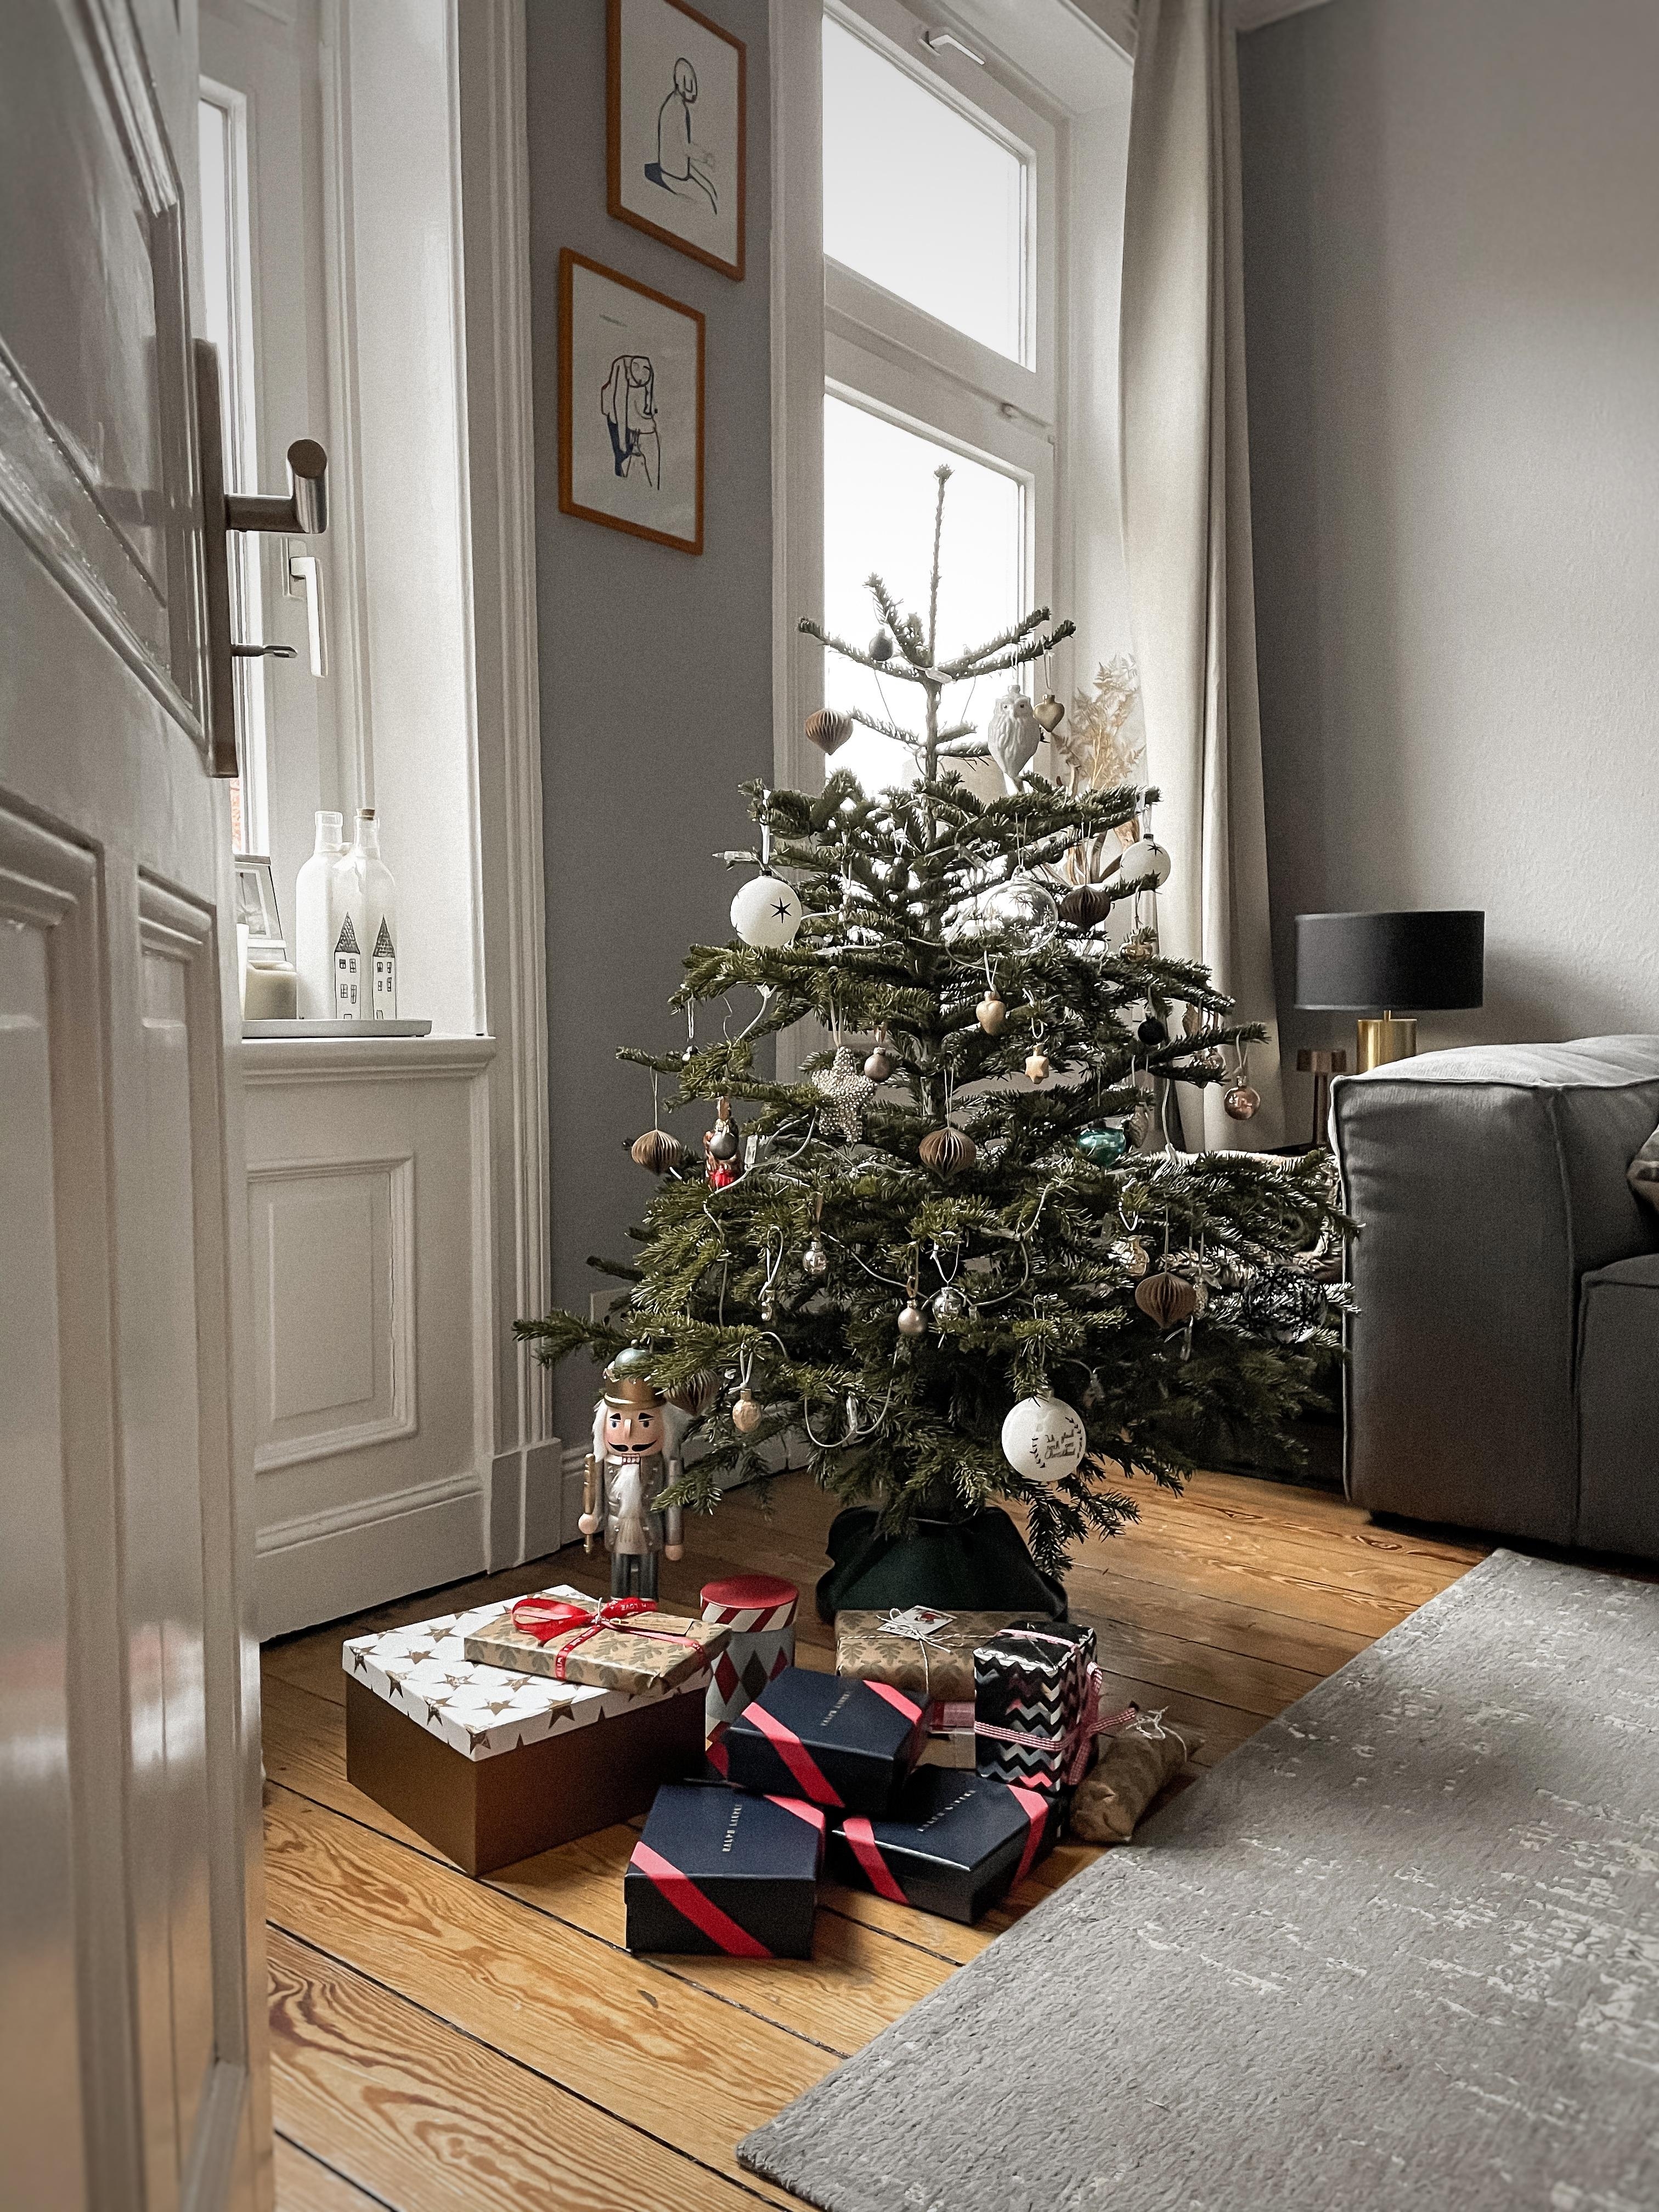 Frohe Weihnachten #geschenke #altbau #weihnachtsbaum #inspo #interior #couchstyle #geschenke